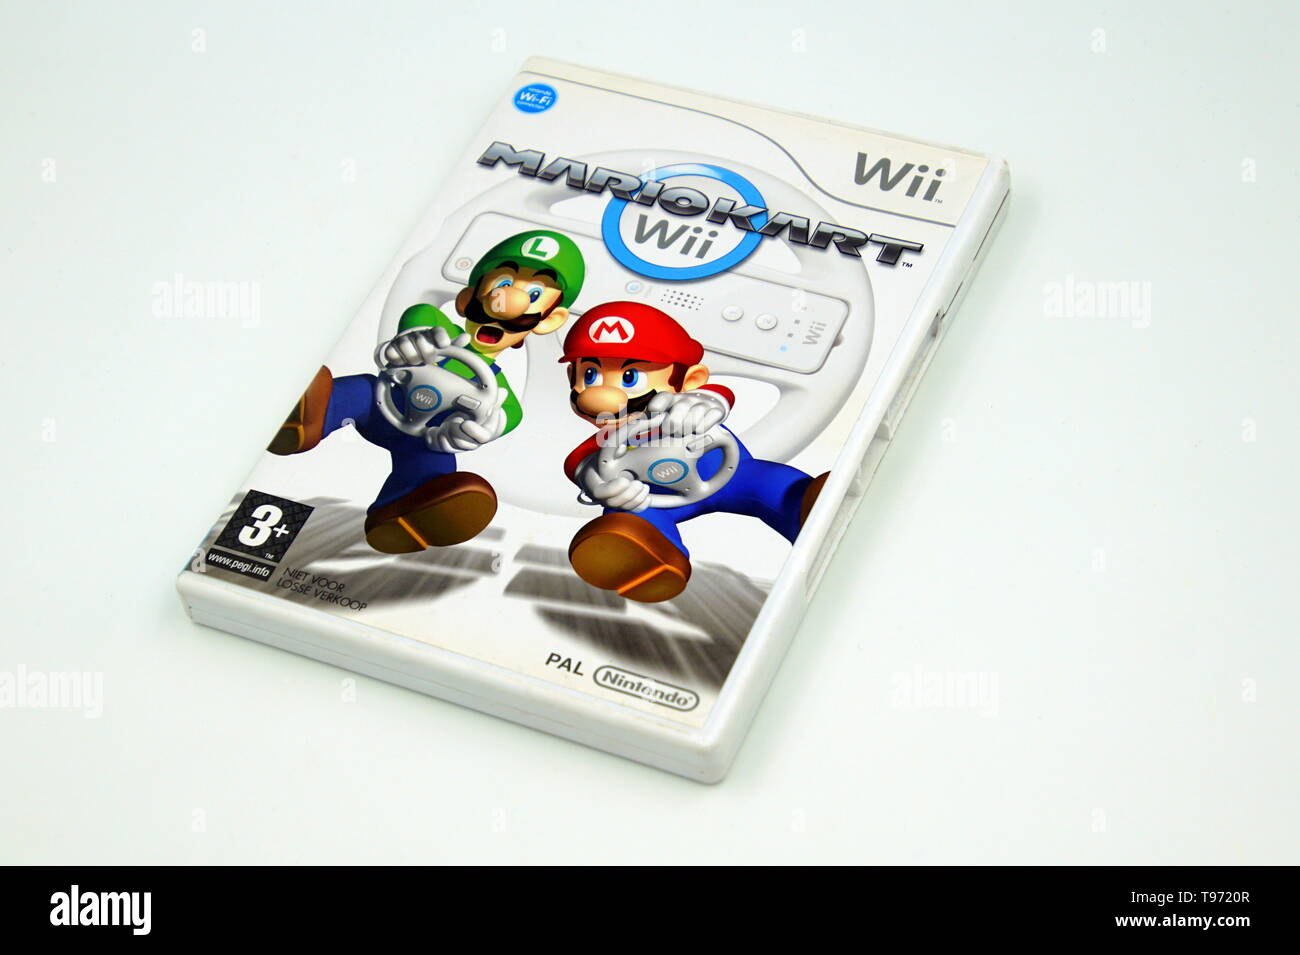 Nintendo Wii Spiel Mario Kart vor einem weißen Hintergrund Stockfotografie  - Alamy